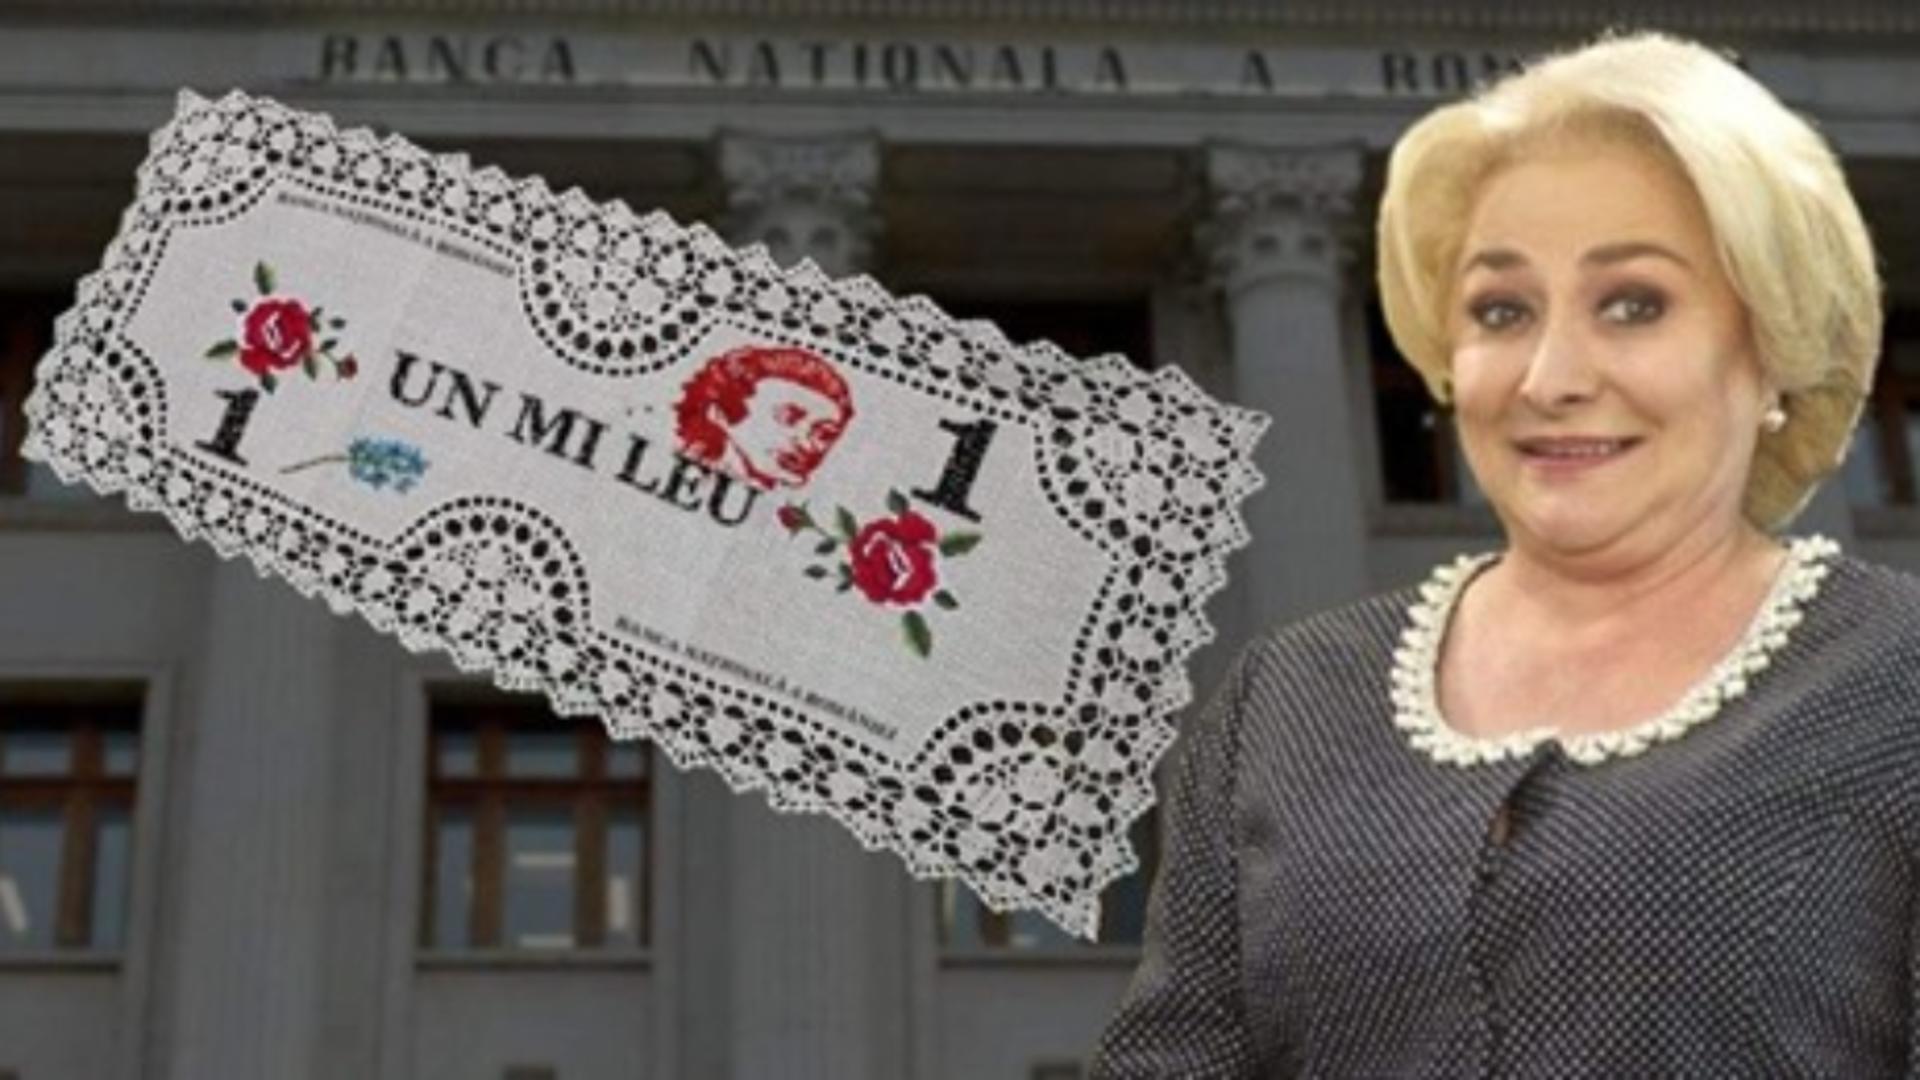 Numirea Vioricăi Dăncilă la Banca Națională a României - subiect de meme pe net